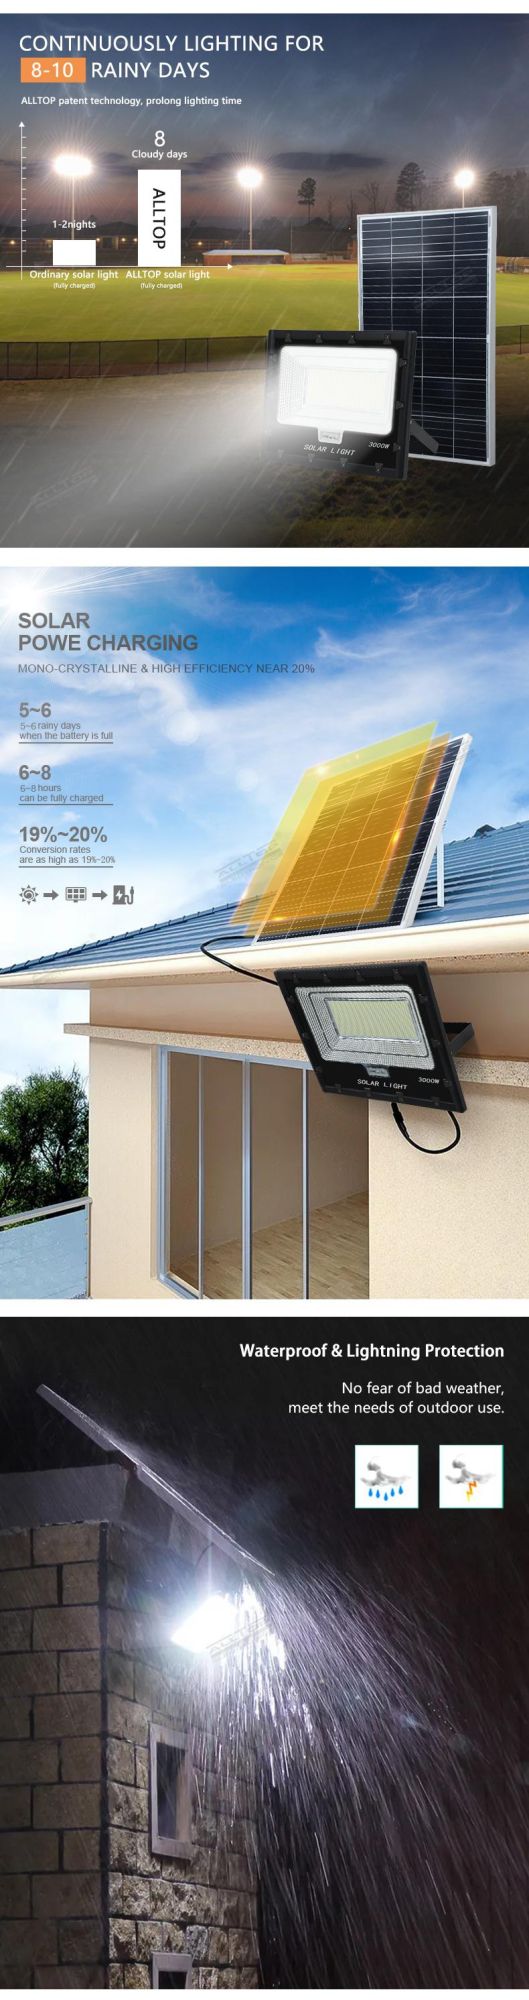 Alltop High Efficient Adjustable Waterproof IP65 SMD 3000watt Outdoor Solar Panel LED Flood Lights